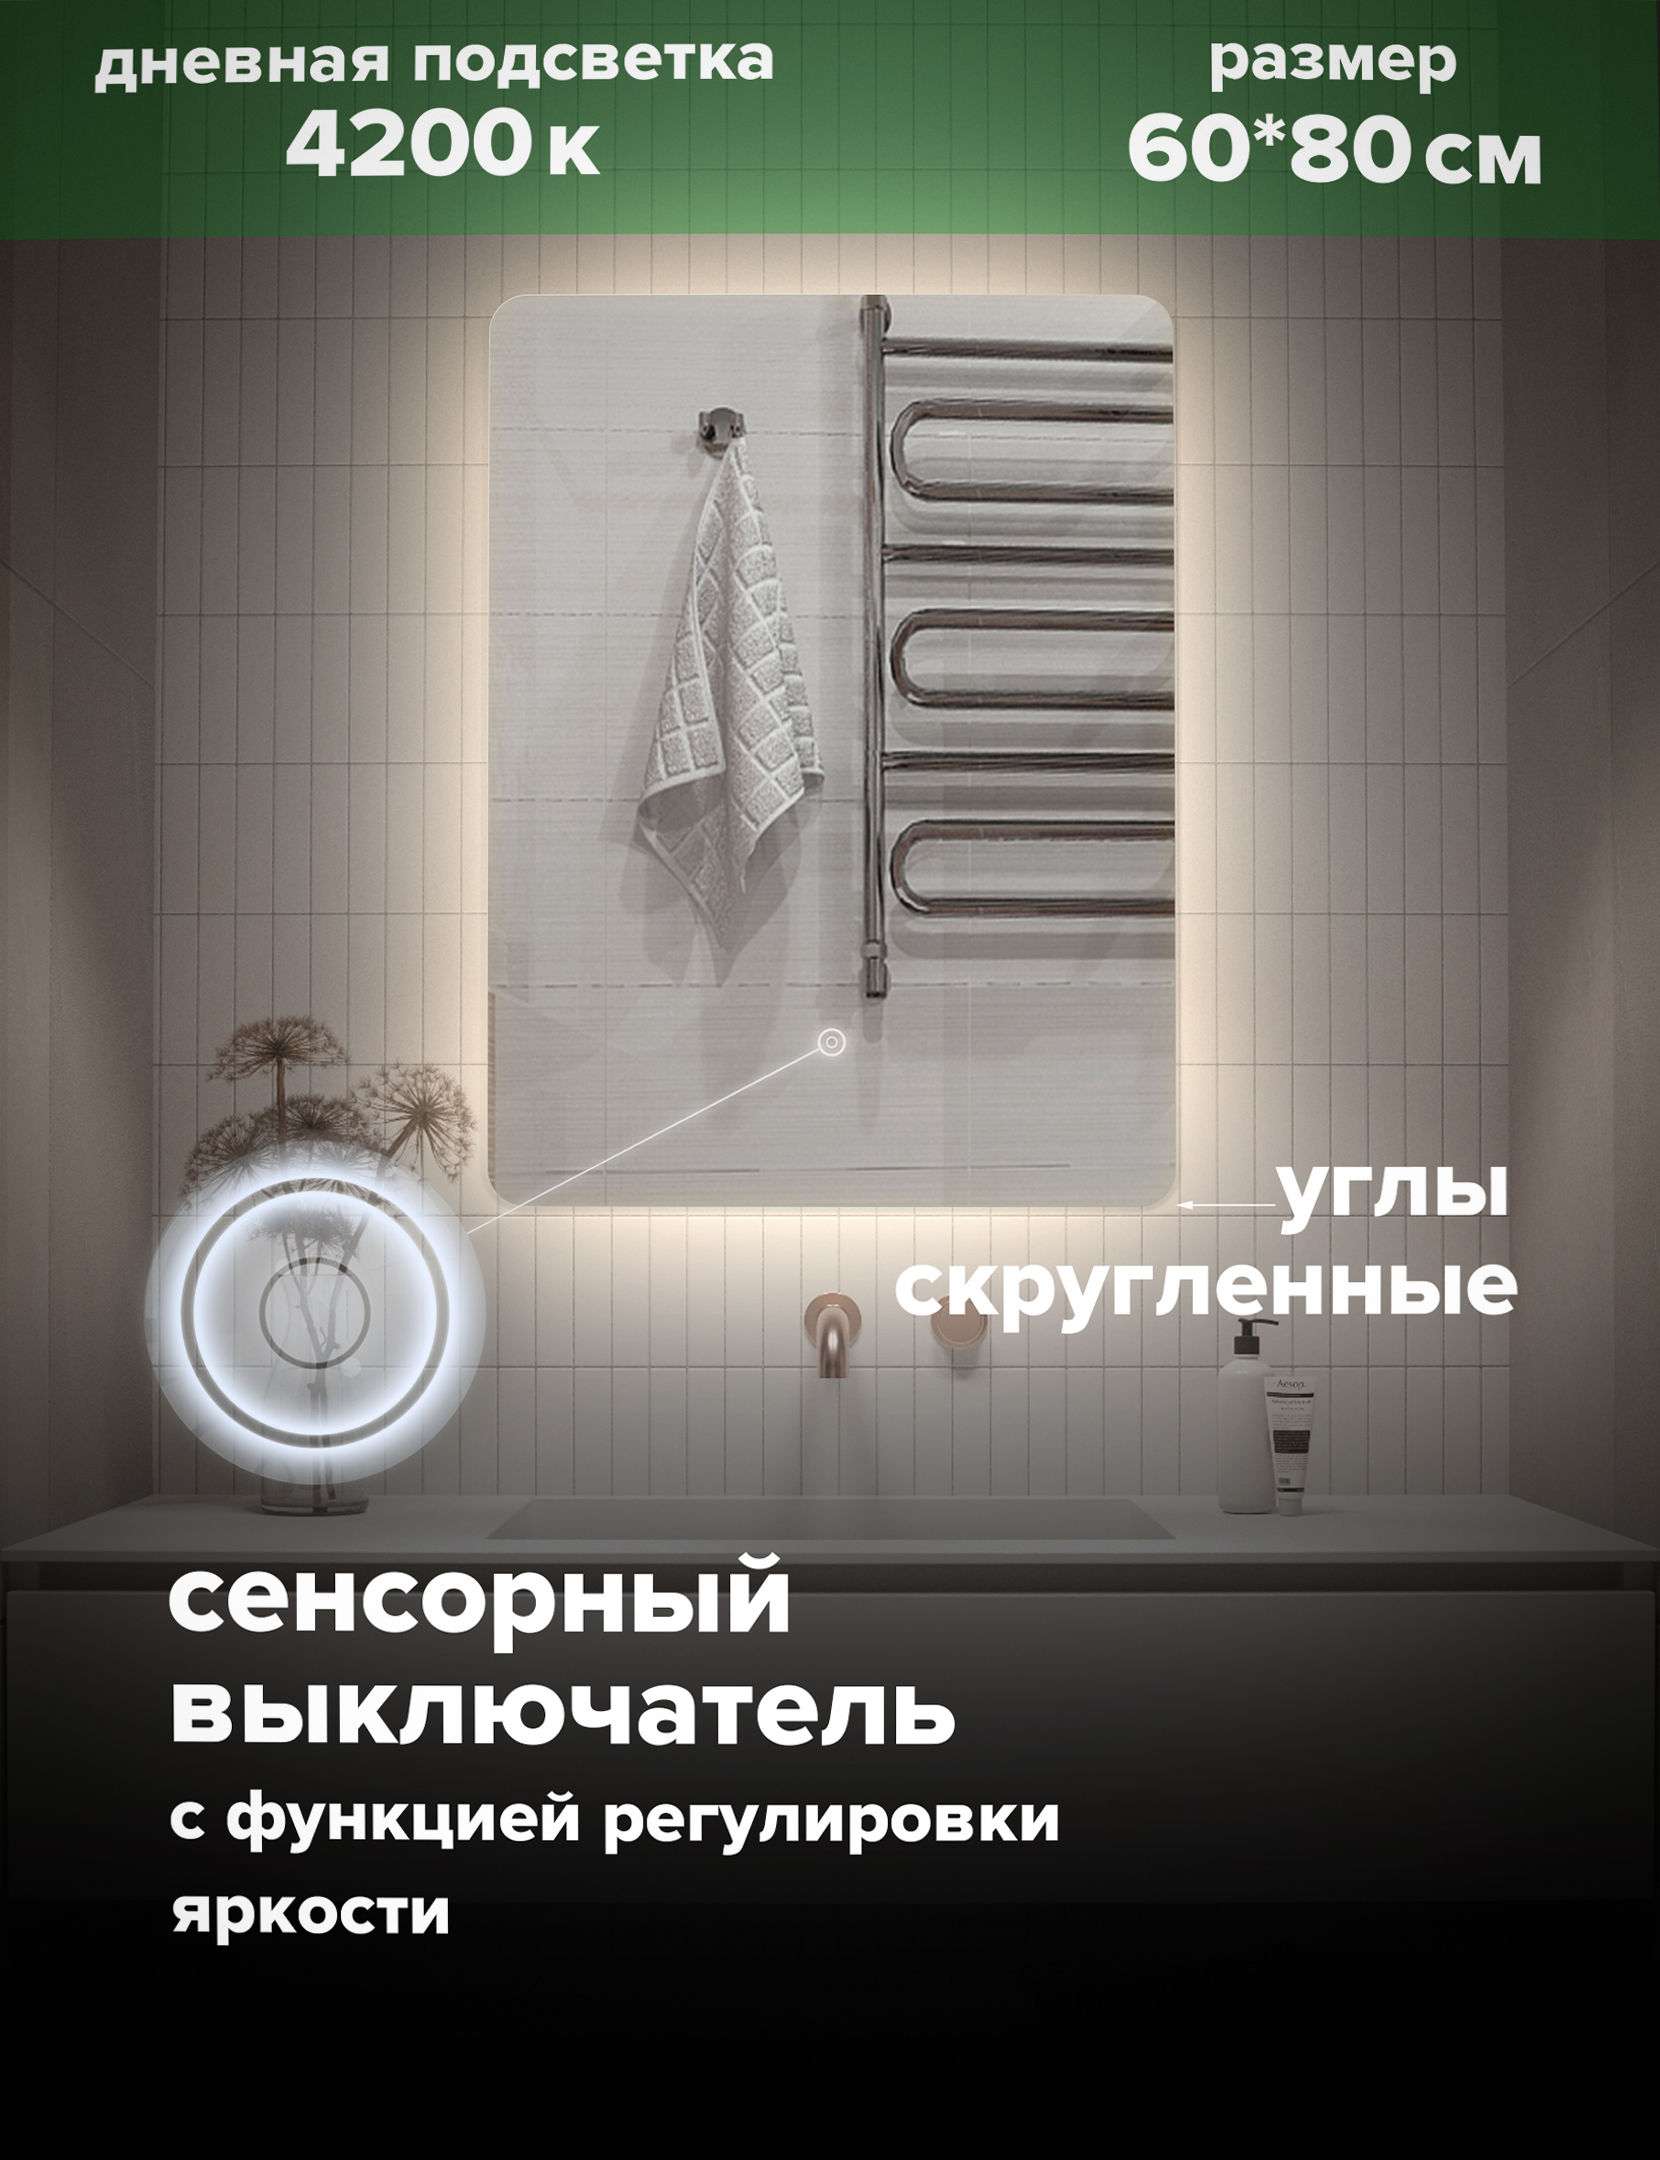 Зеркало для ванной Alfa Mirrors дневная подсветка 4200К прямоугольное 60*80 см, MOl-68d